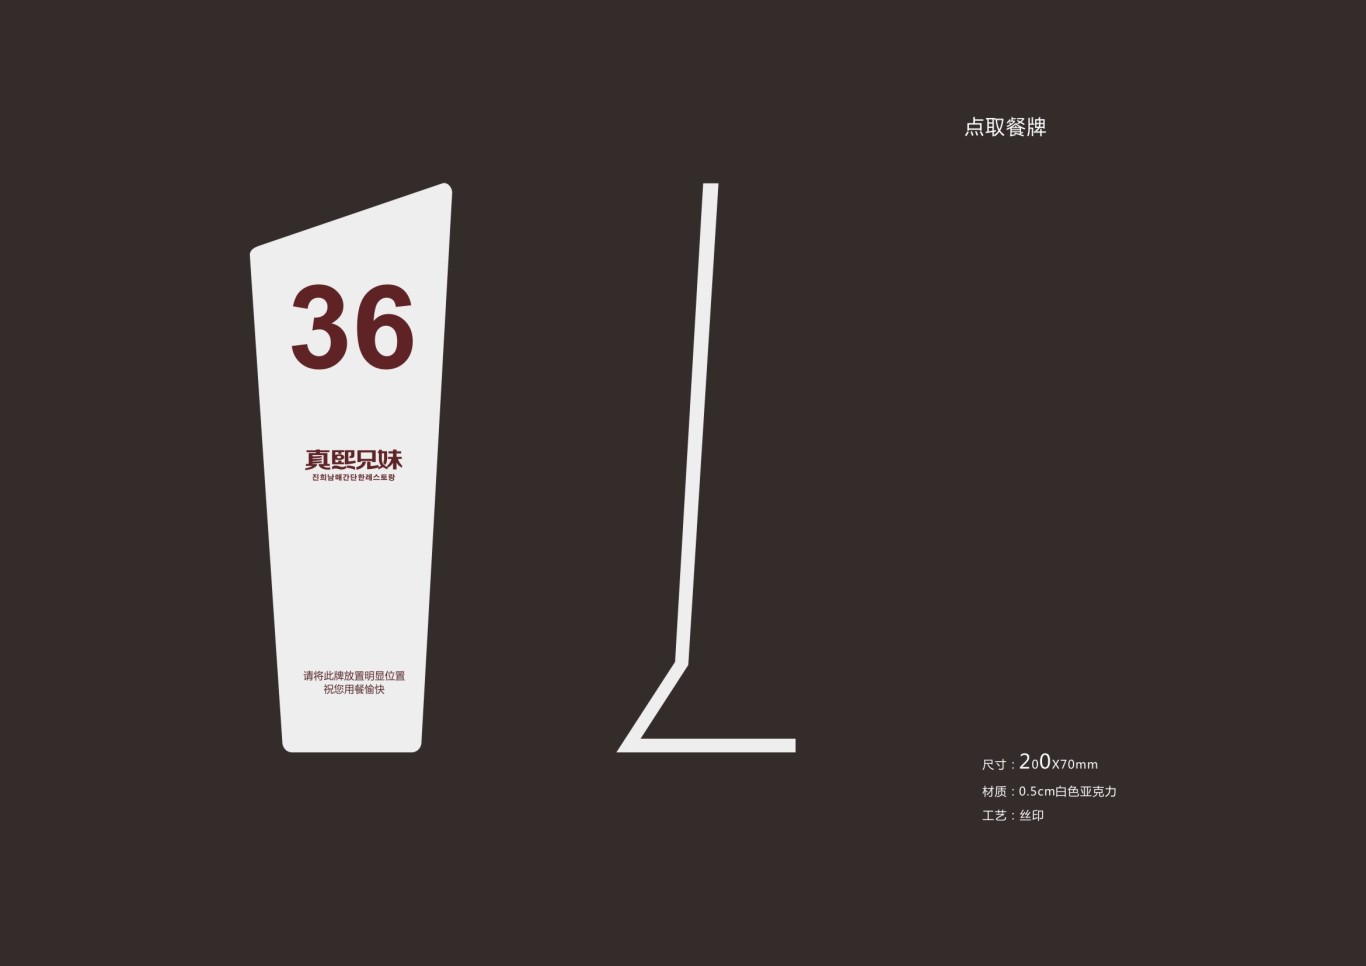 韩式简餐连锁品牌设计图38